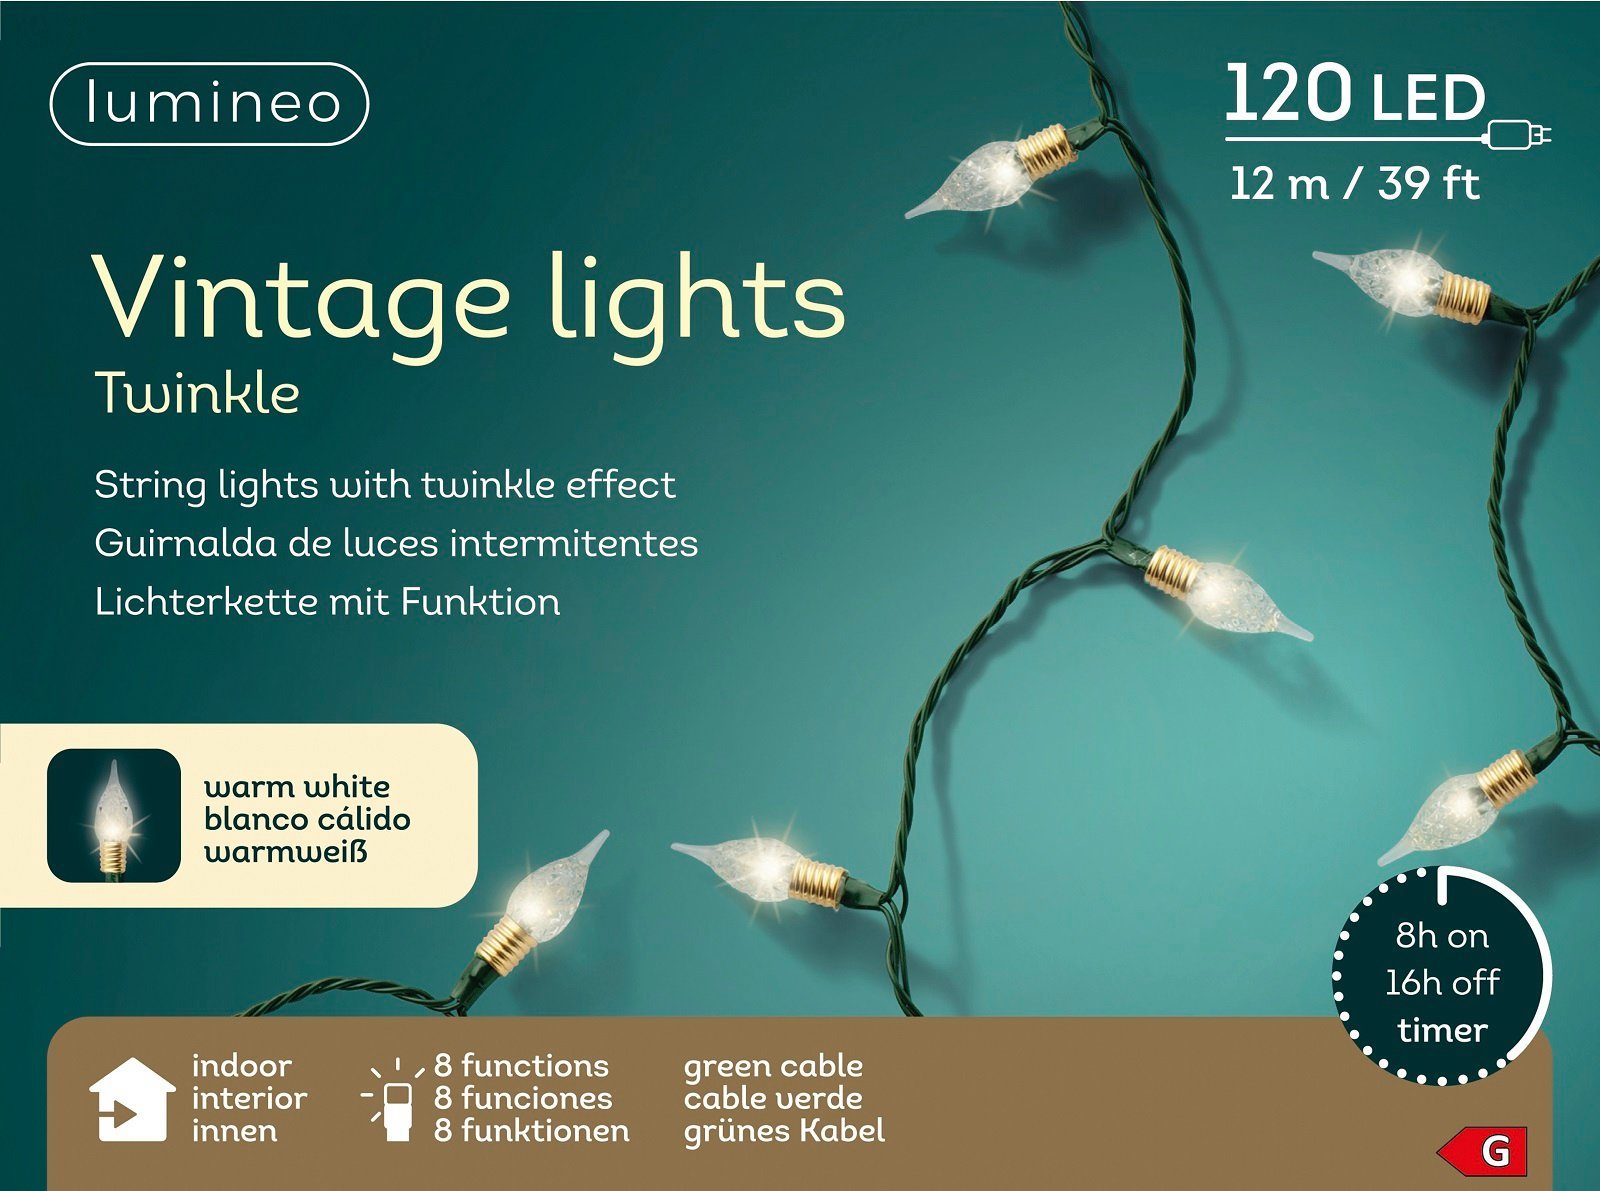 Lumineo LED-Lichterkette Lumineo Lichterkette Twinkle 120 LED 12 m warm weiß 8 Funktionen, Twinkle-Effect, Indoor, 8h-Timer